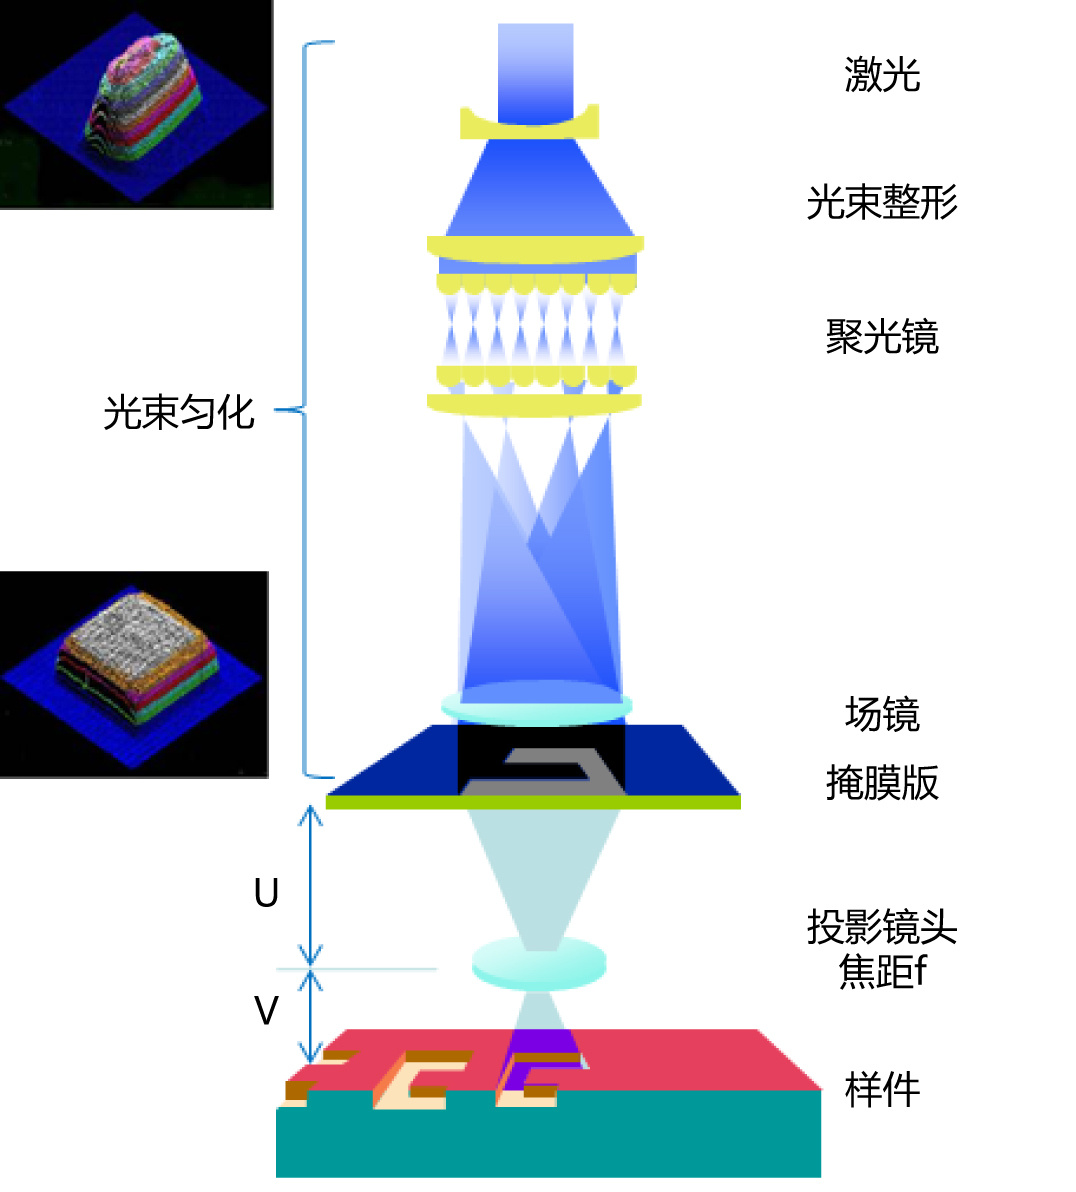 树脂镜片防伪激光微加工系统瀚宇科技(香港)有限公司